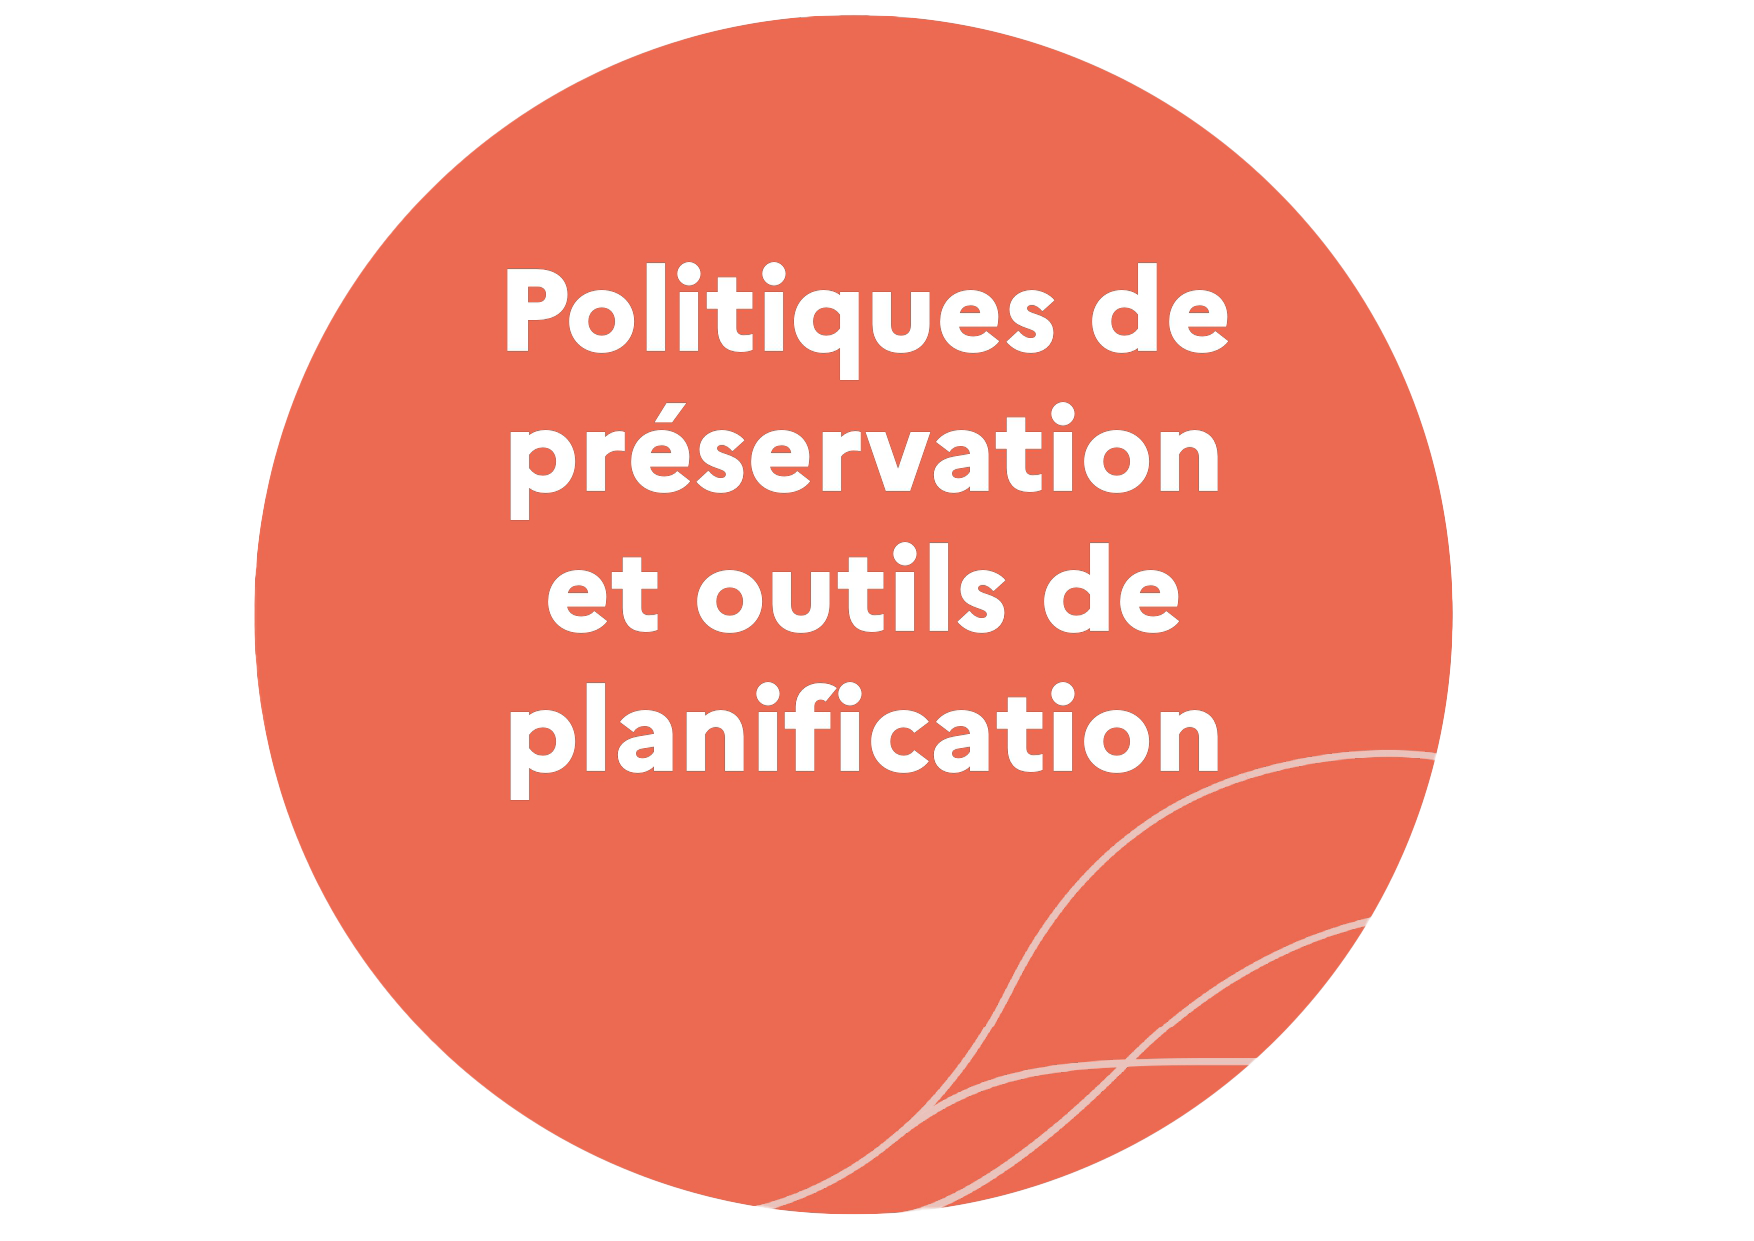 Politiques de préservation et outils de planification